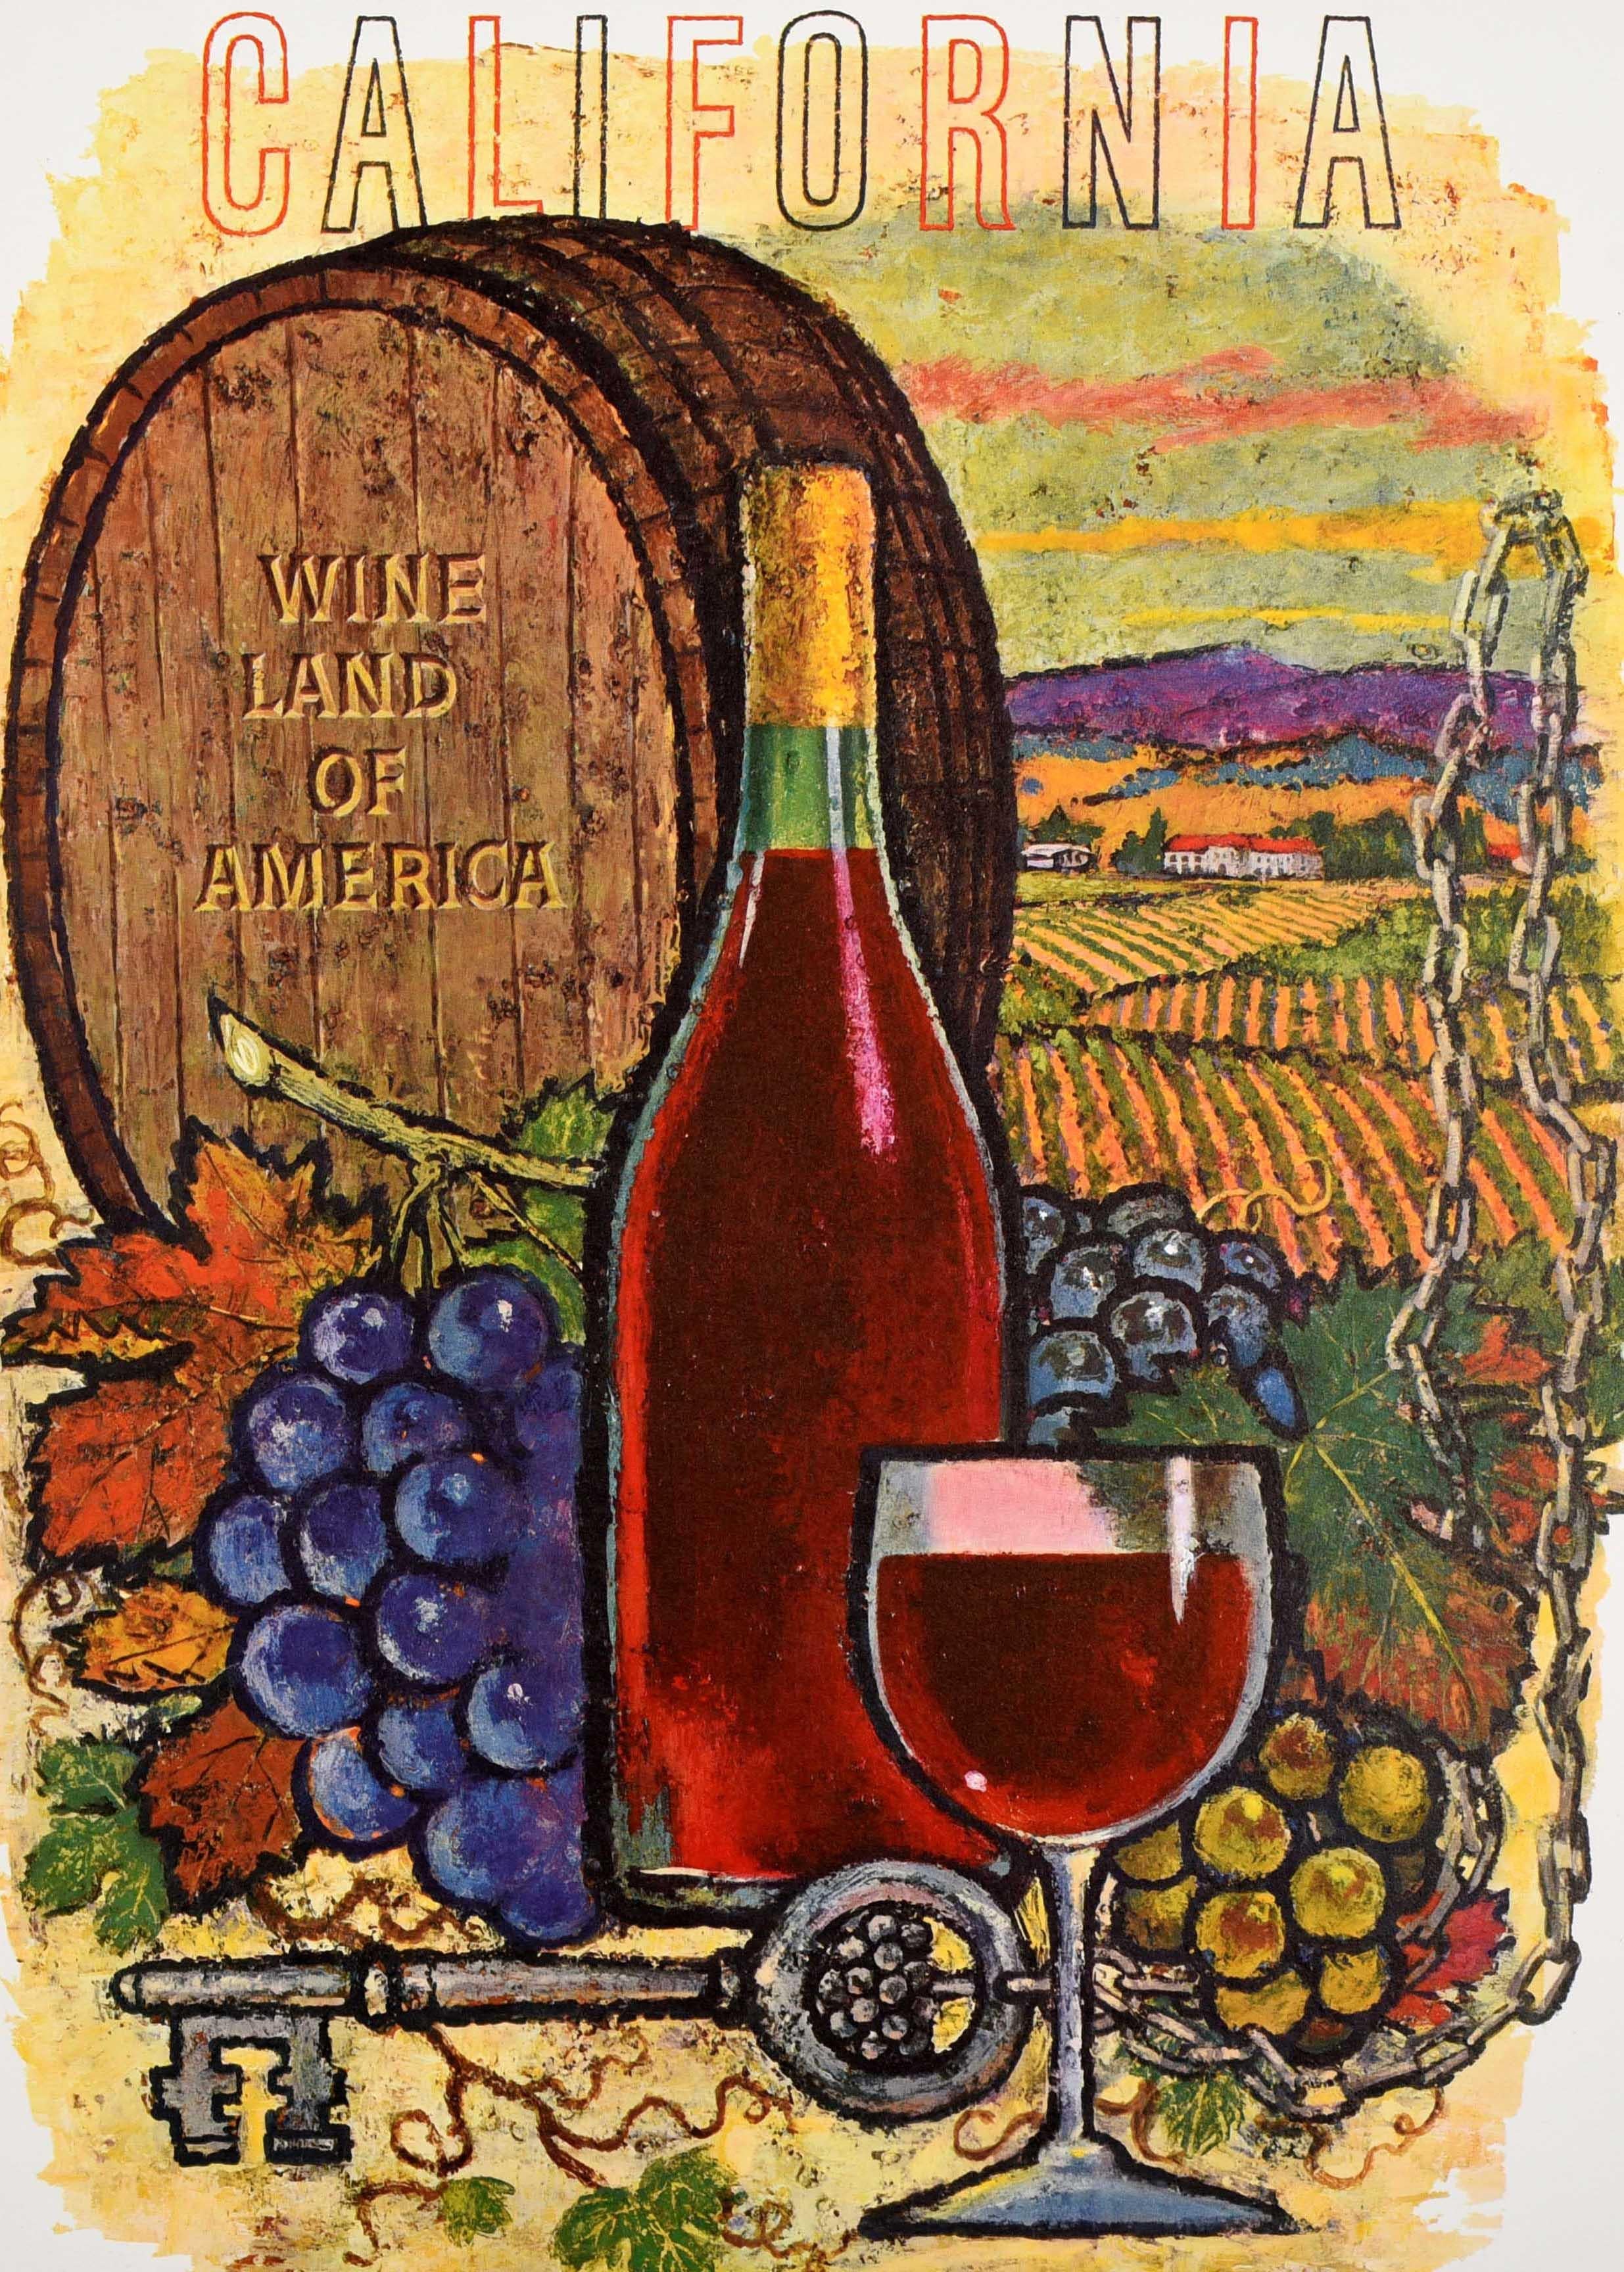 Affiche originale de publicité pour des boissons - California Wine Land of America - avec un dessin coloré d'Amado Gonzalez (1913-2007) représentant une bouteille de vin rouge avec un verre devant un tonneau en bois avec une clé sur une chaîne, des